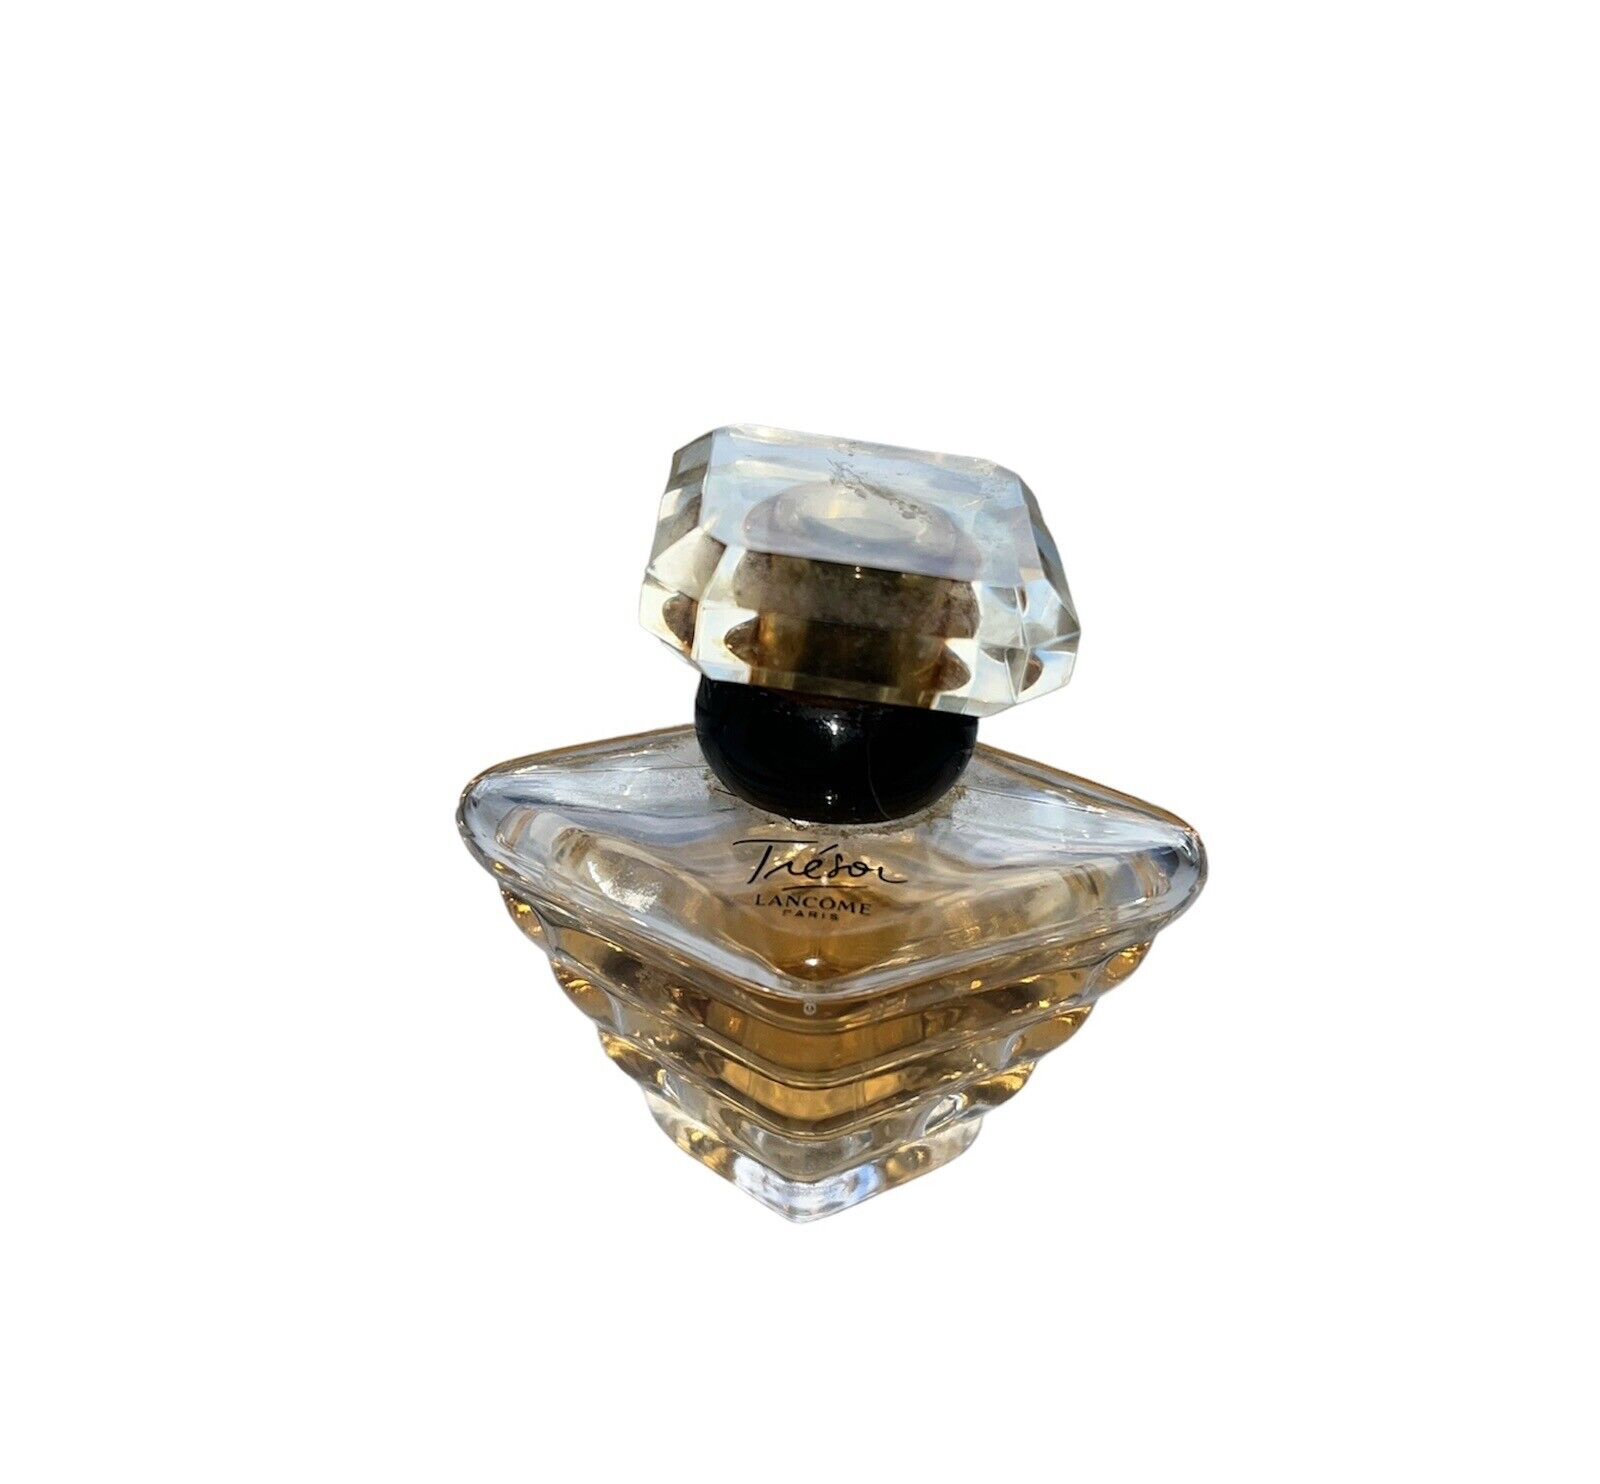 Lancome Tresor Eau de Parfum Spray 1.7oz - 50ml EDP RARE VTG  2003